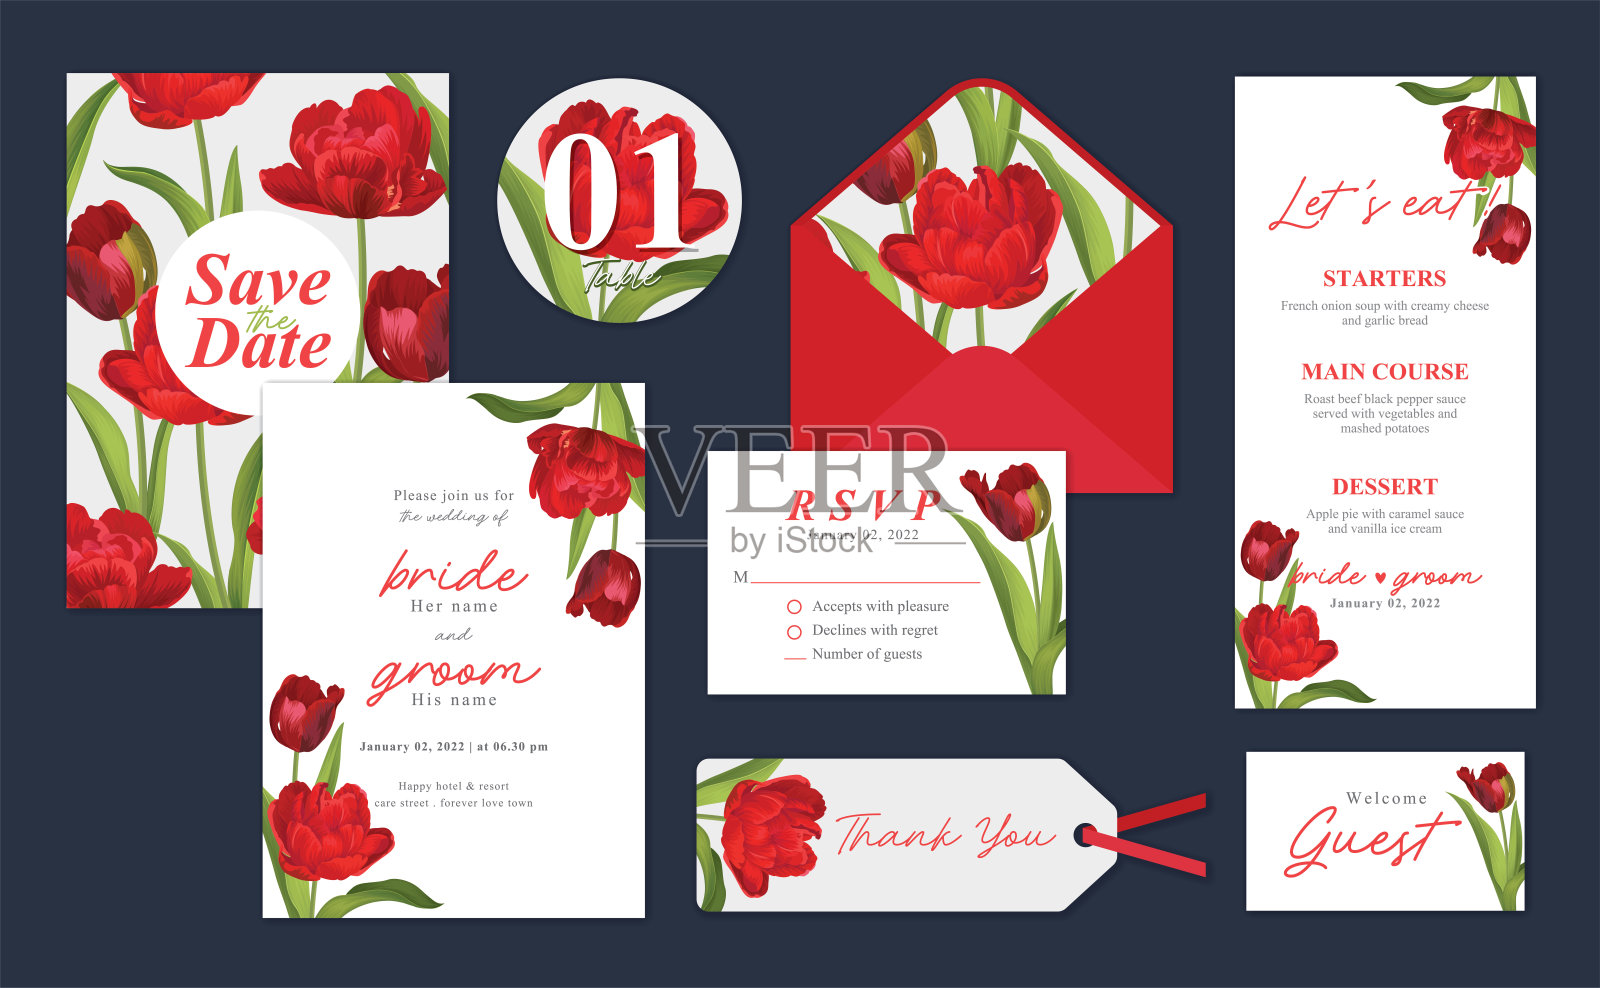 郁金香花的背景模板。矢量集花卉元素婚礼邀请，贺卡，信封，代金券，小册子和横幅设计。设计模板素材